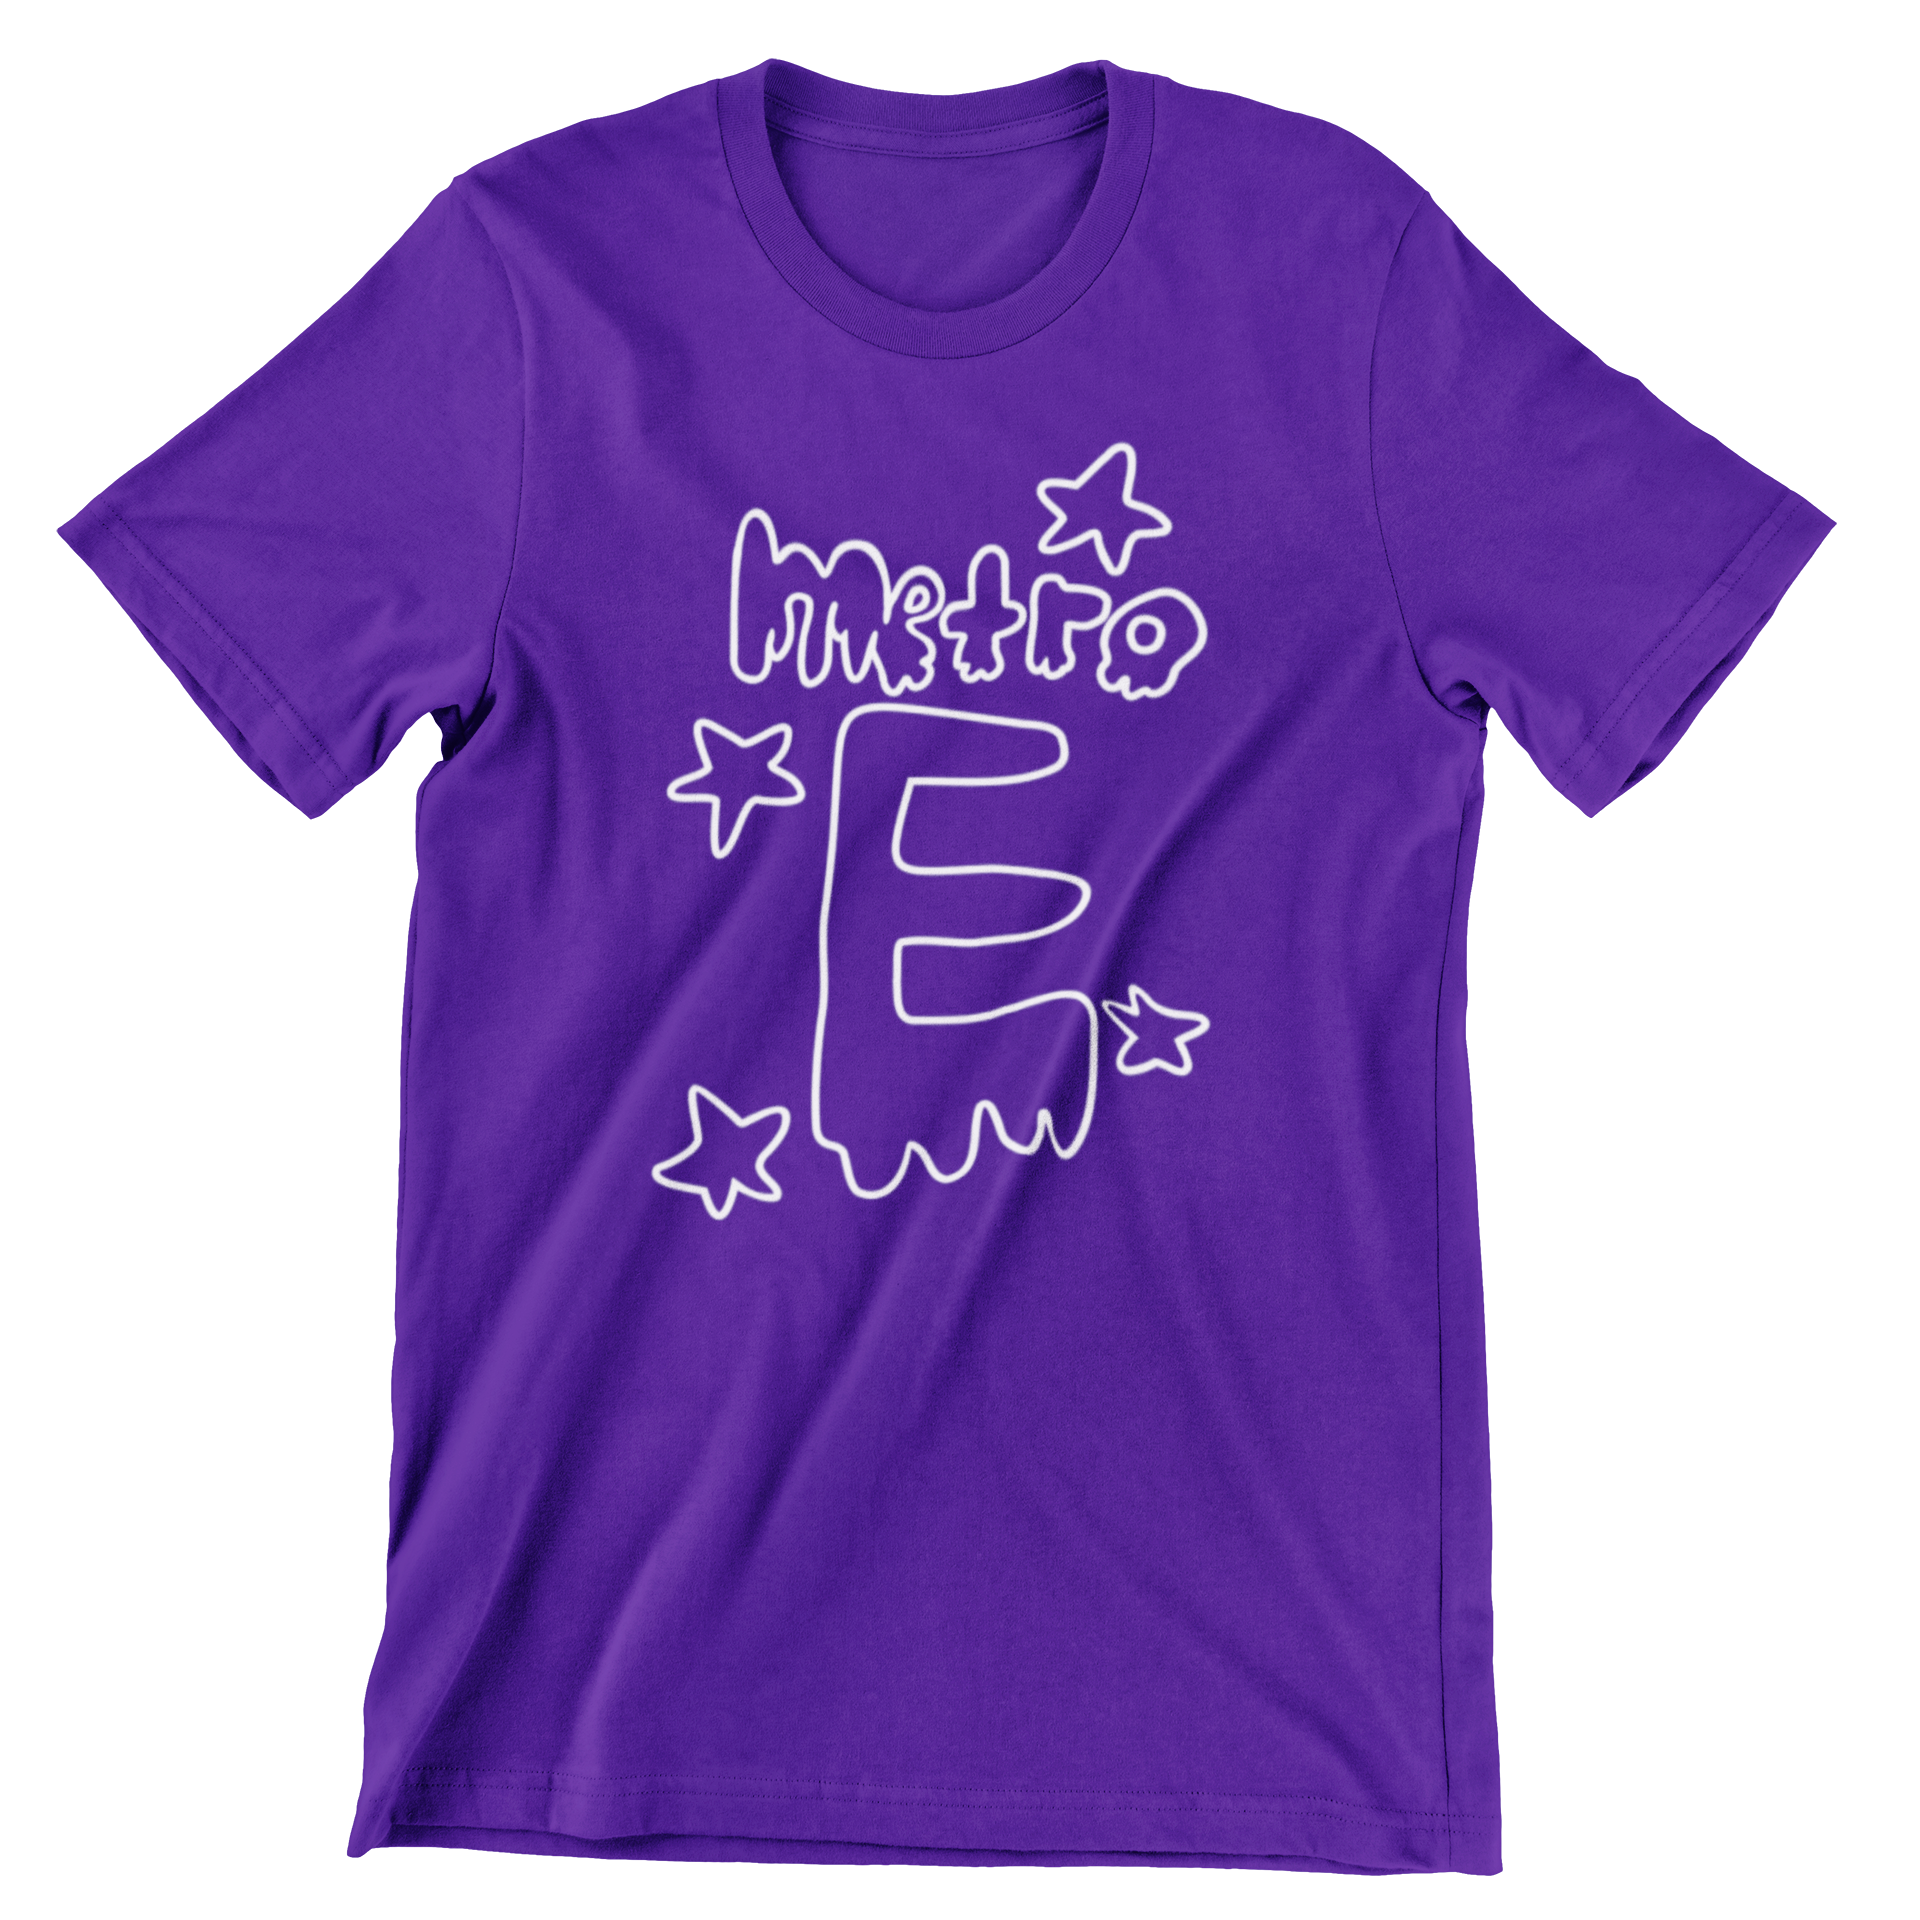 Metro E Adult T-Shirt-STUDENT DESIGN WINNER